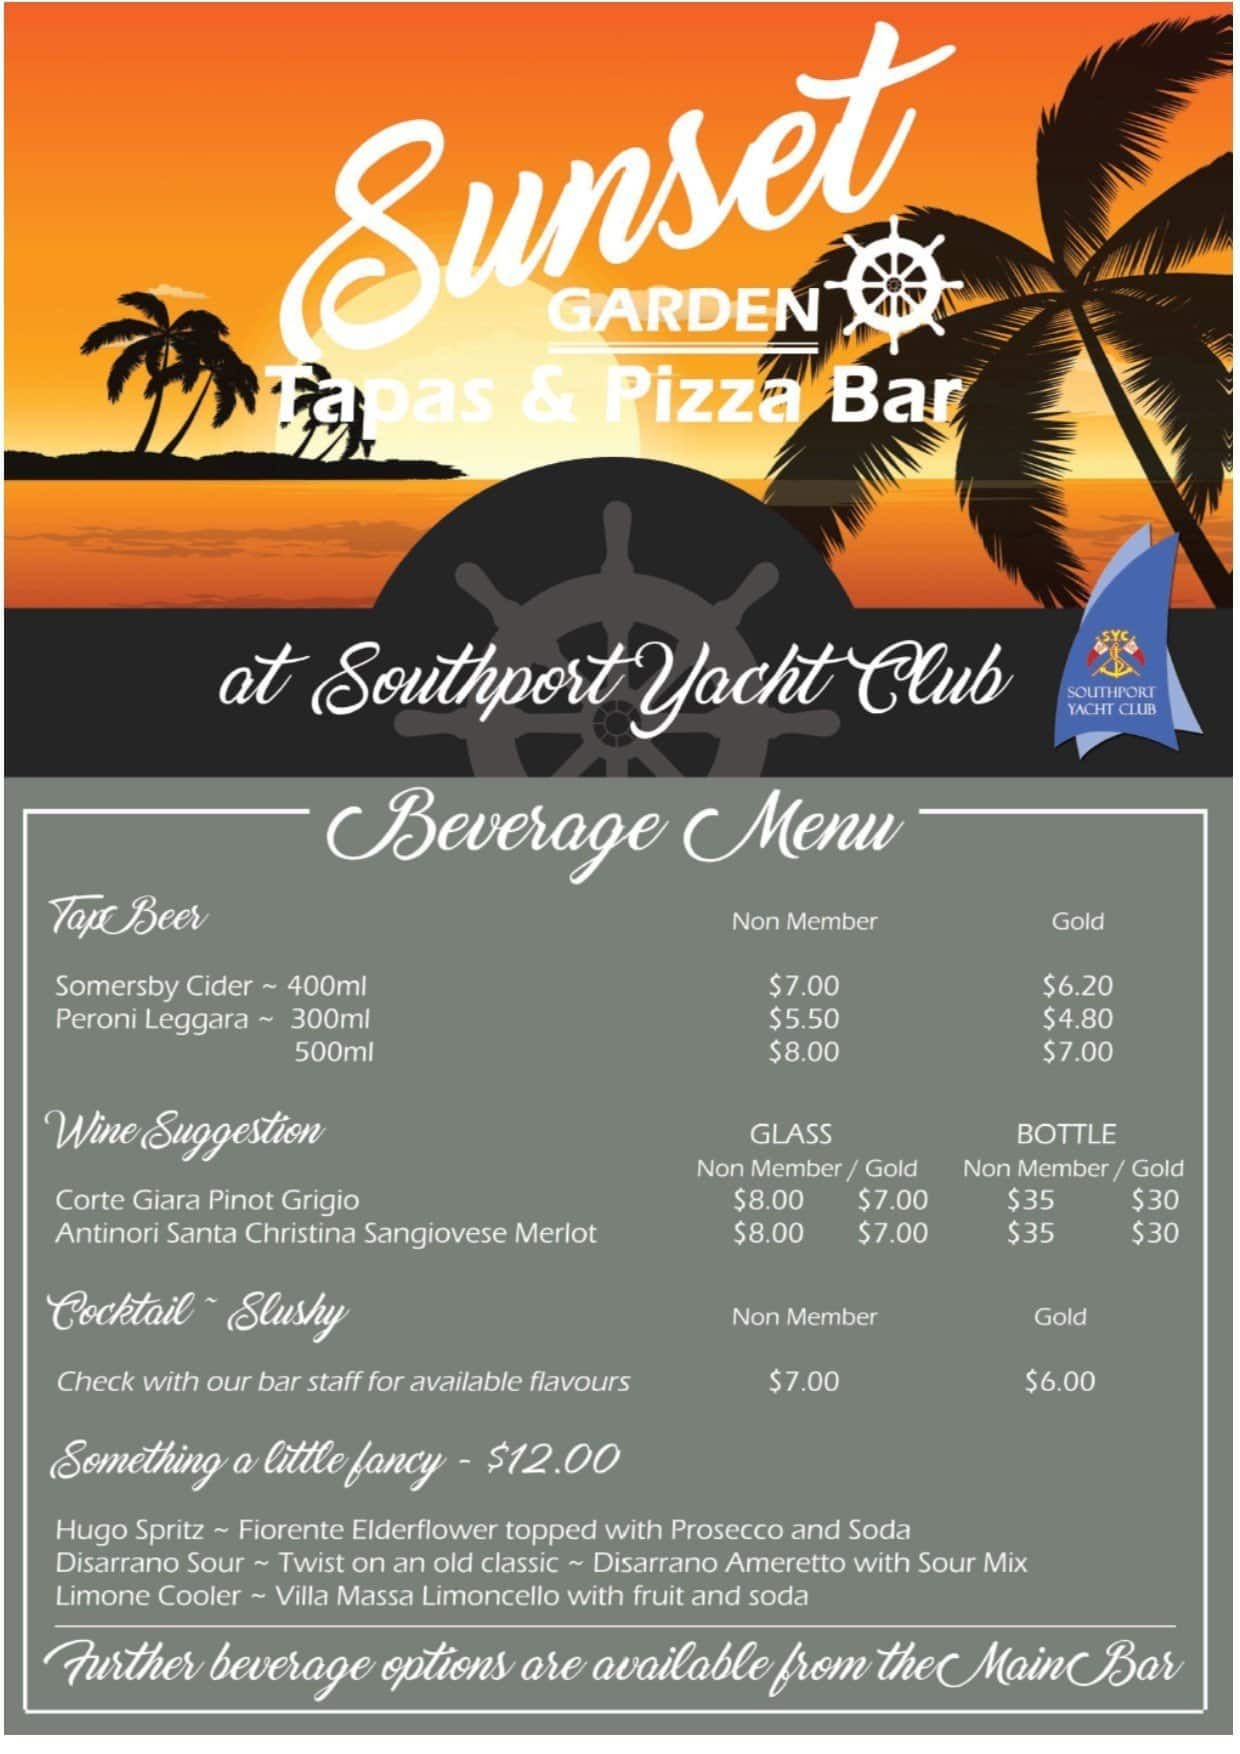 yacht club subs menu